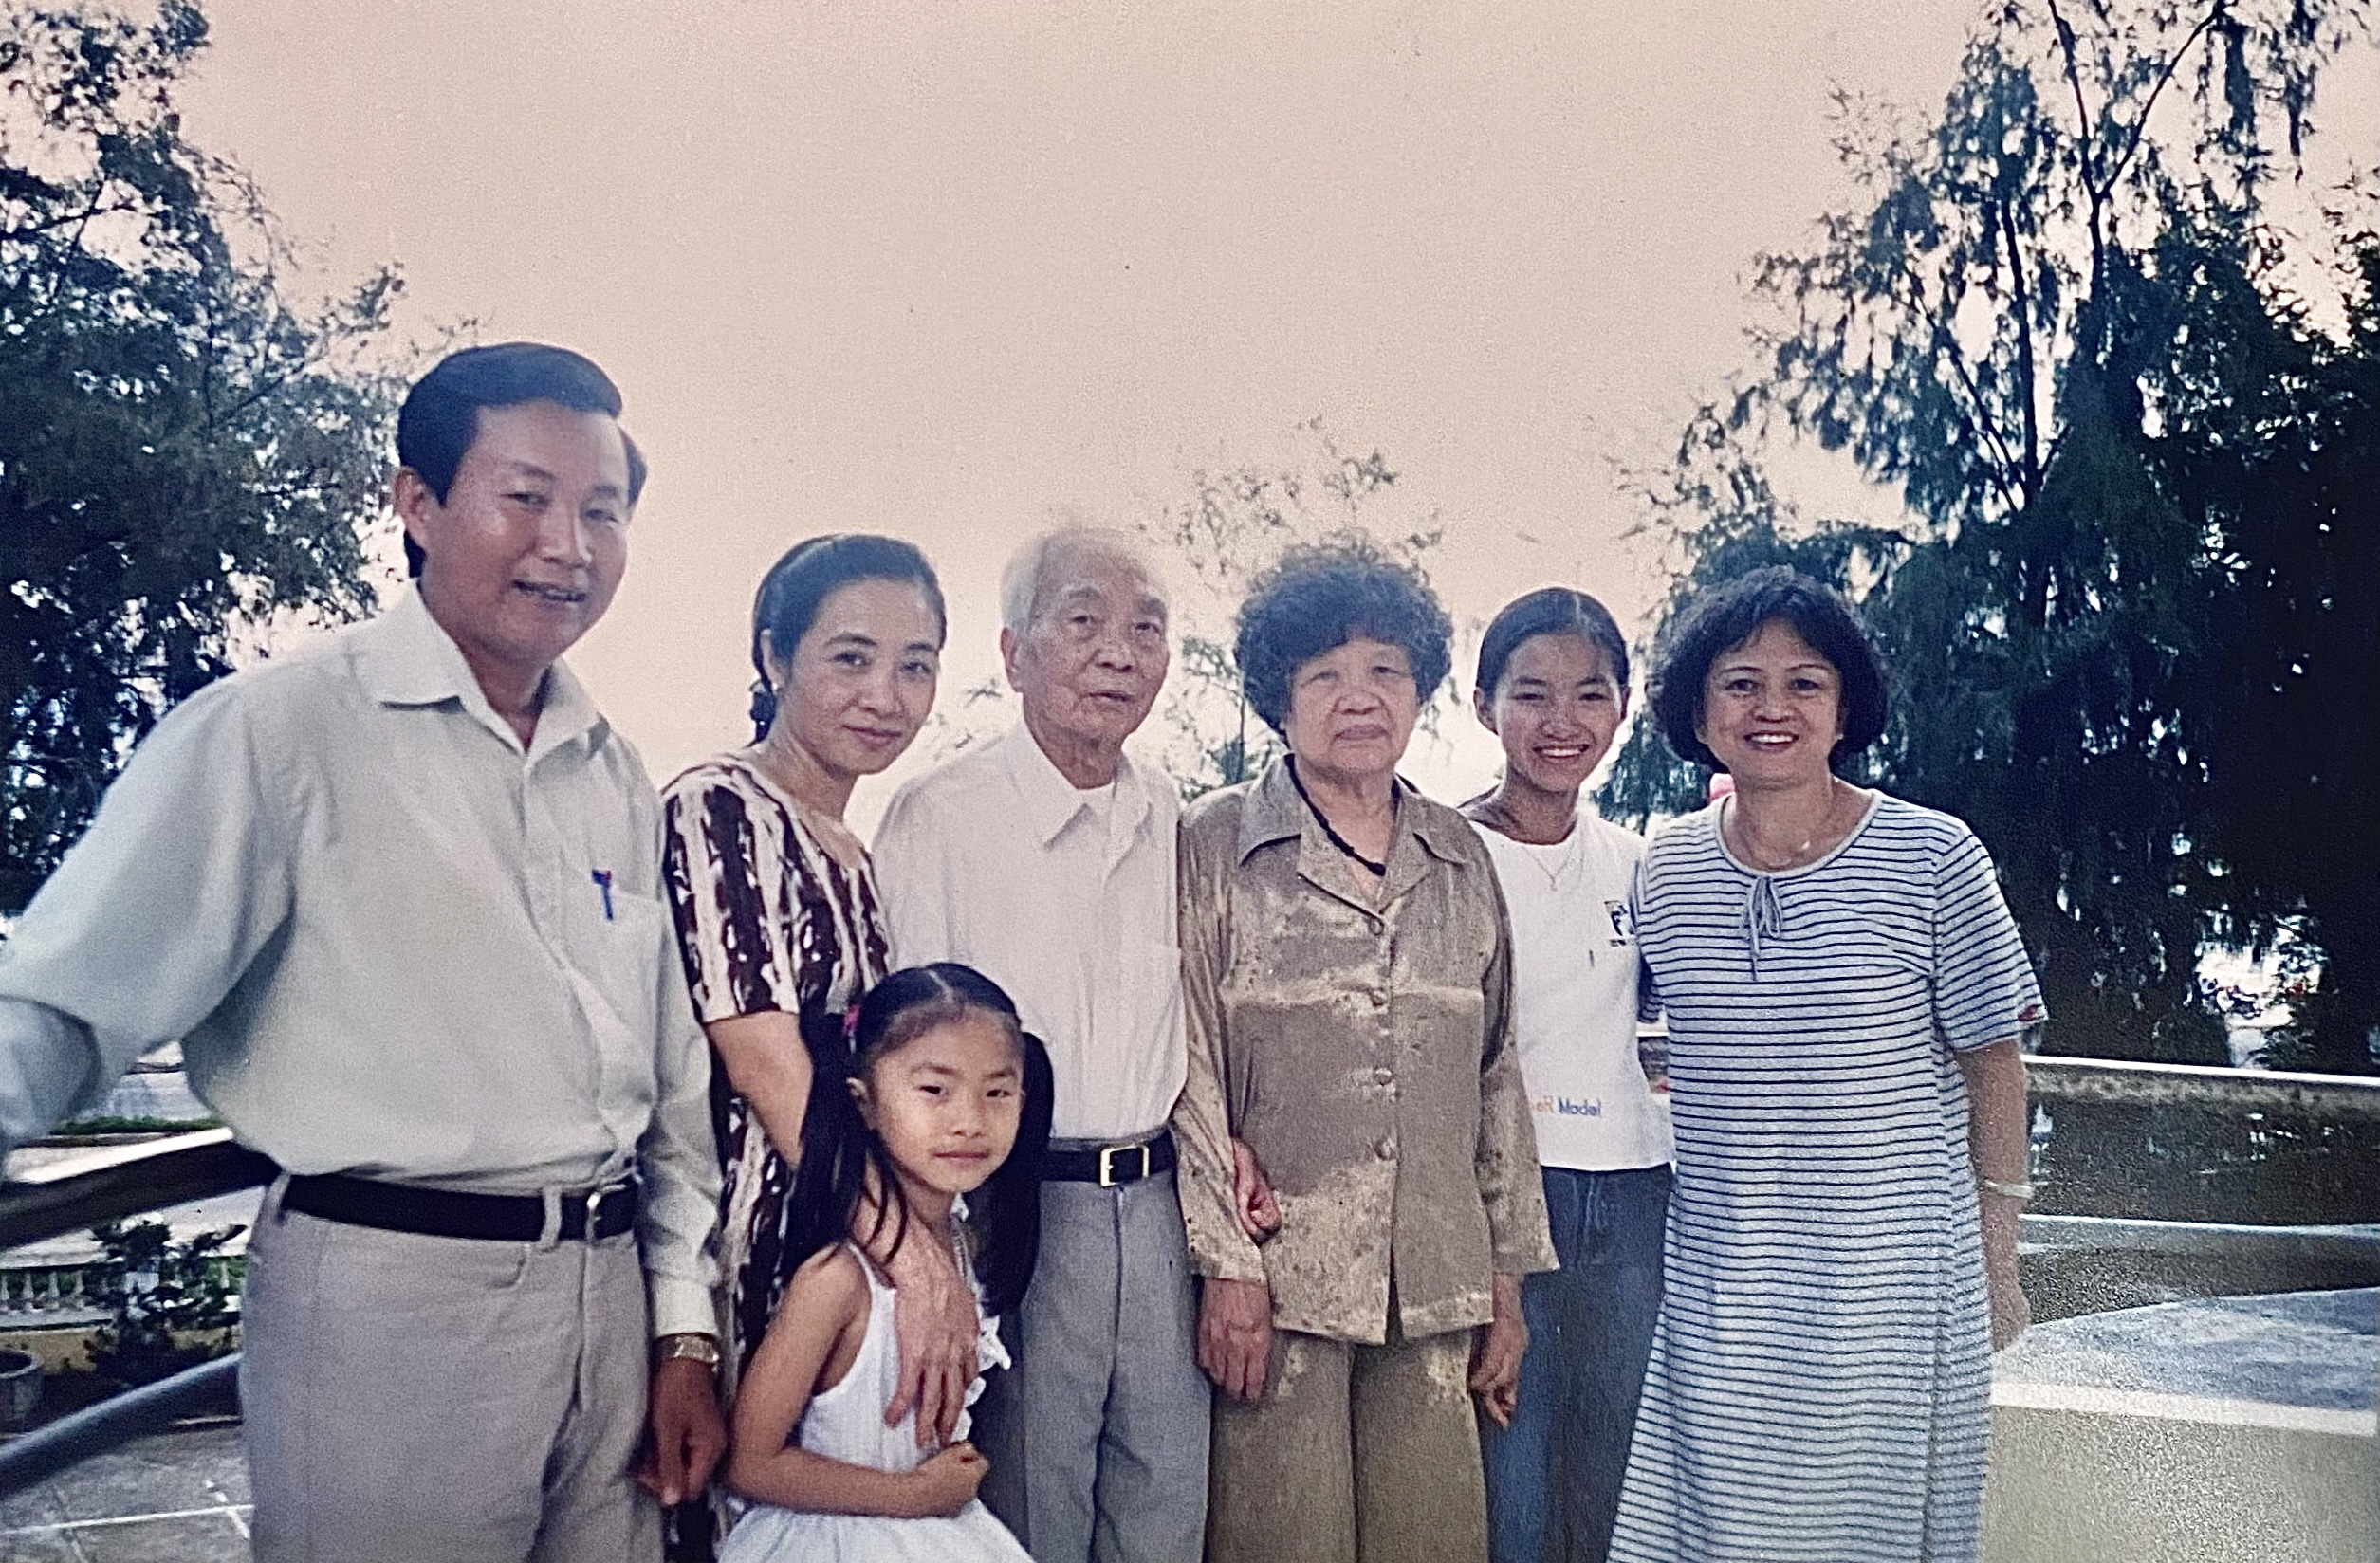 Kỷ niệm được gặp Đại tướng vào năm 2002 tại Đồng Hới, Quảng Bình.